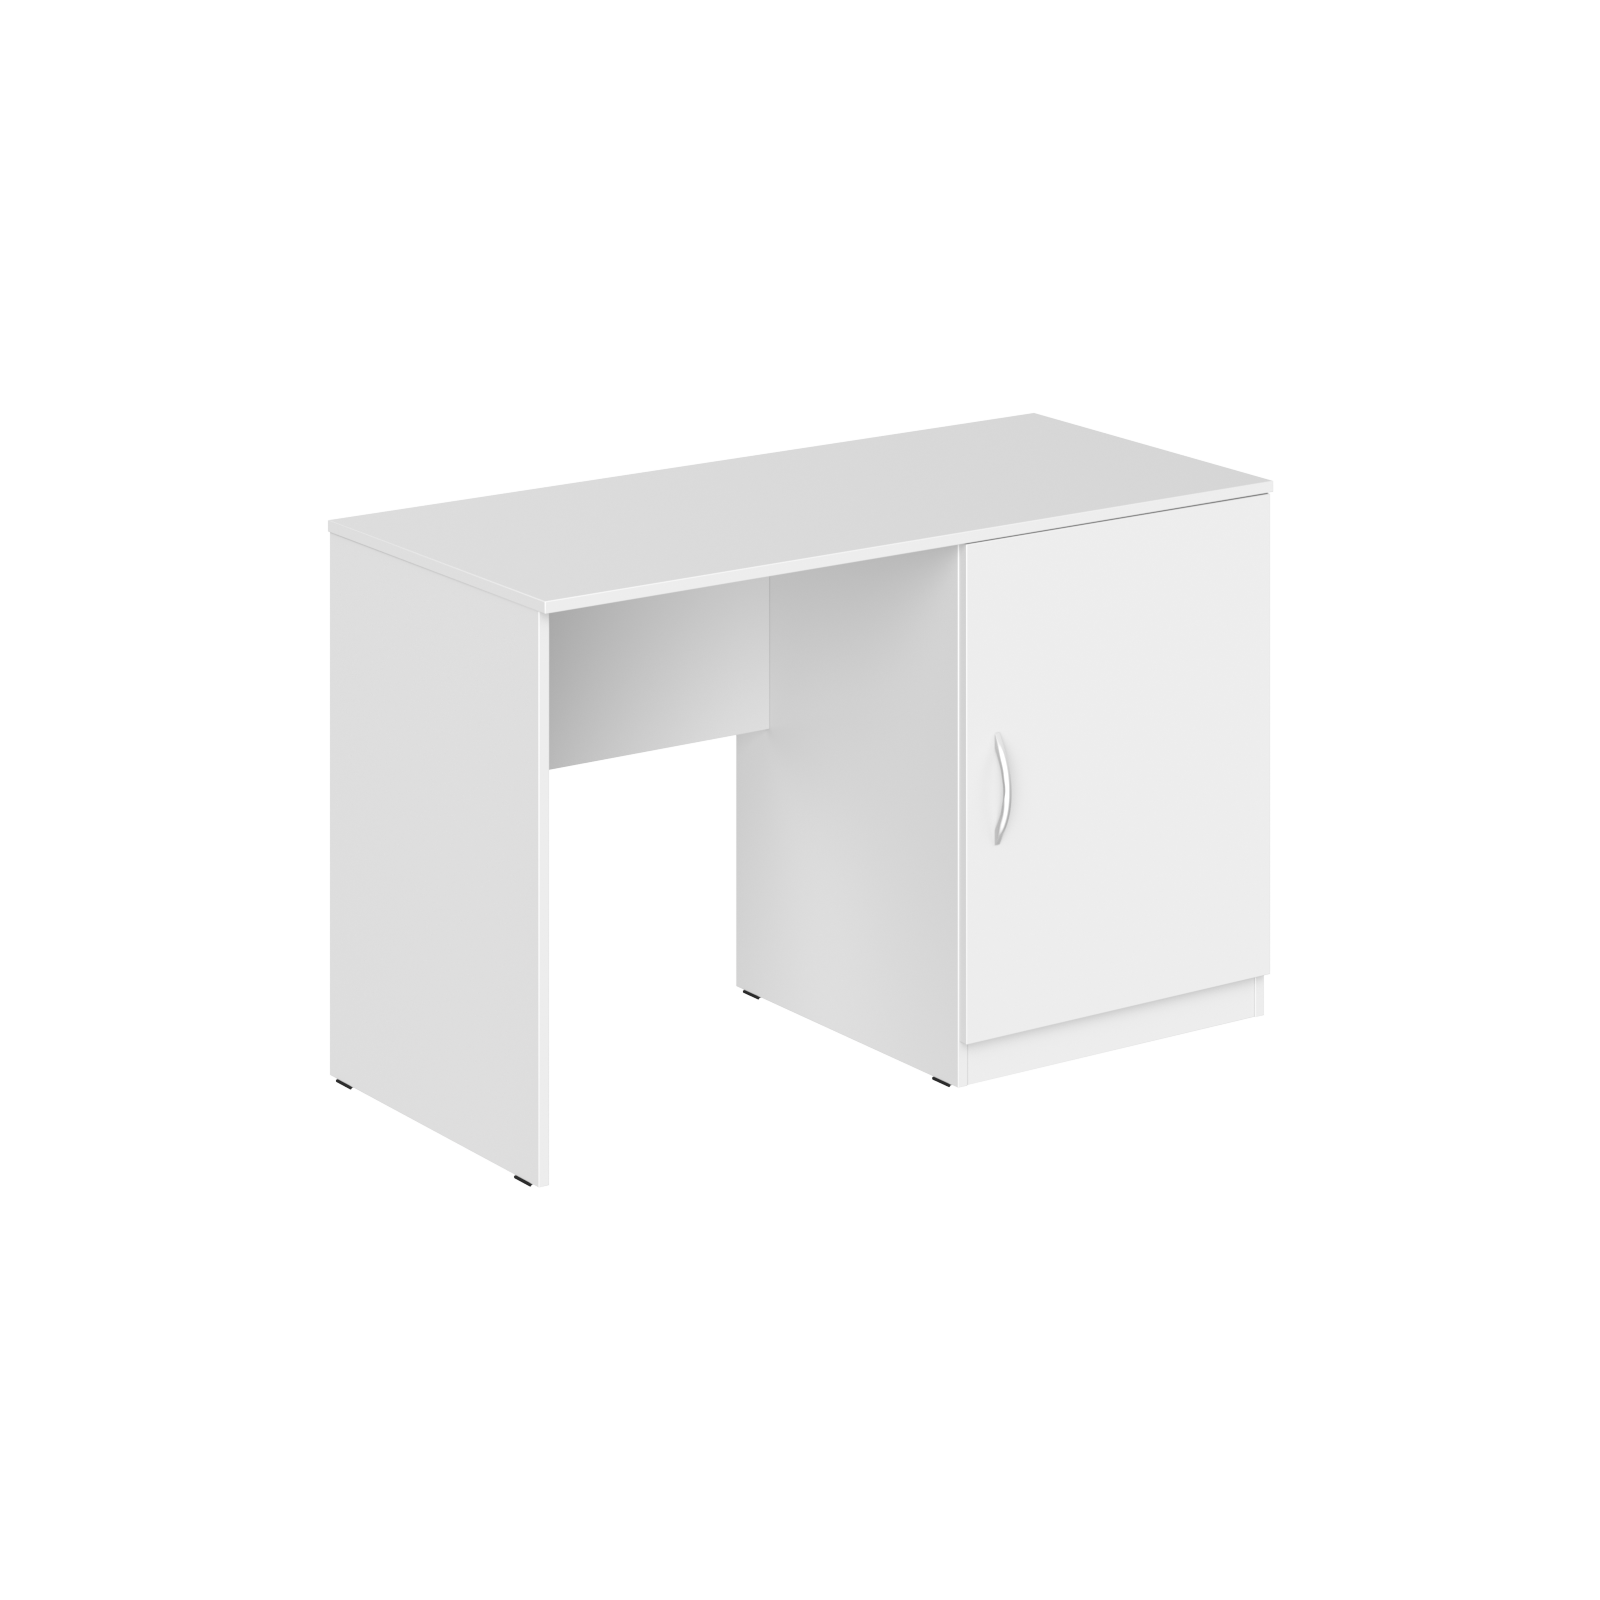 Стол с тумбой под холодильник "Kann" Skyland, (1200х550х750 мм), R/L, (арт. KTFD 1255), Белый